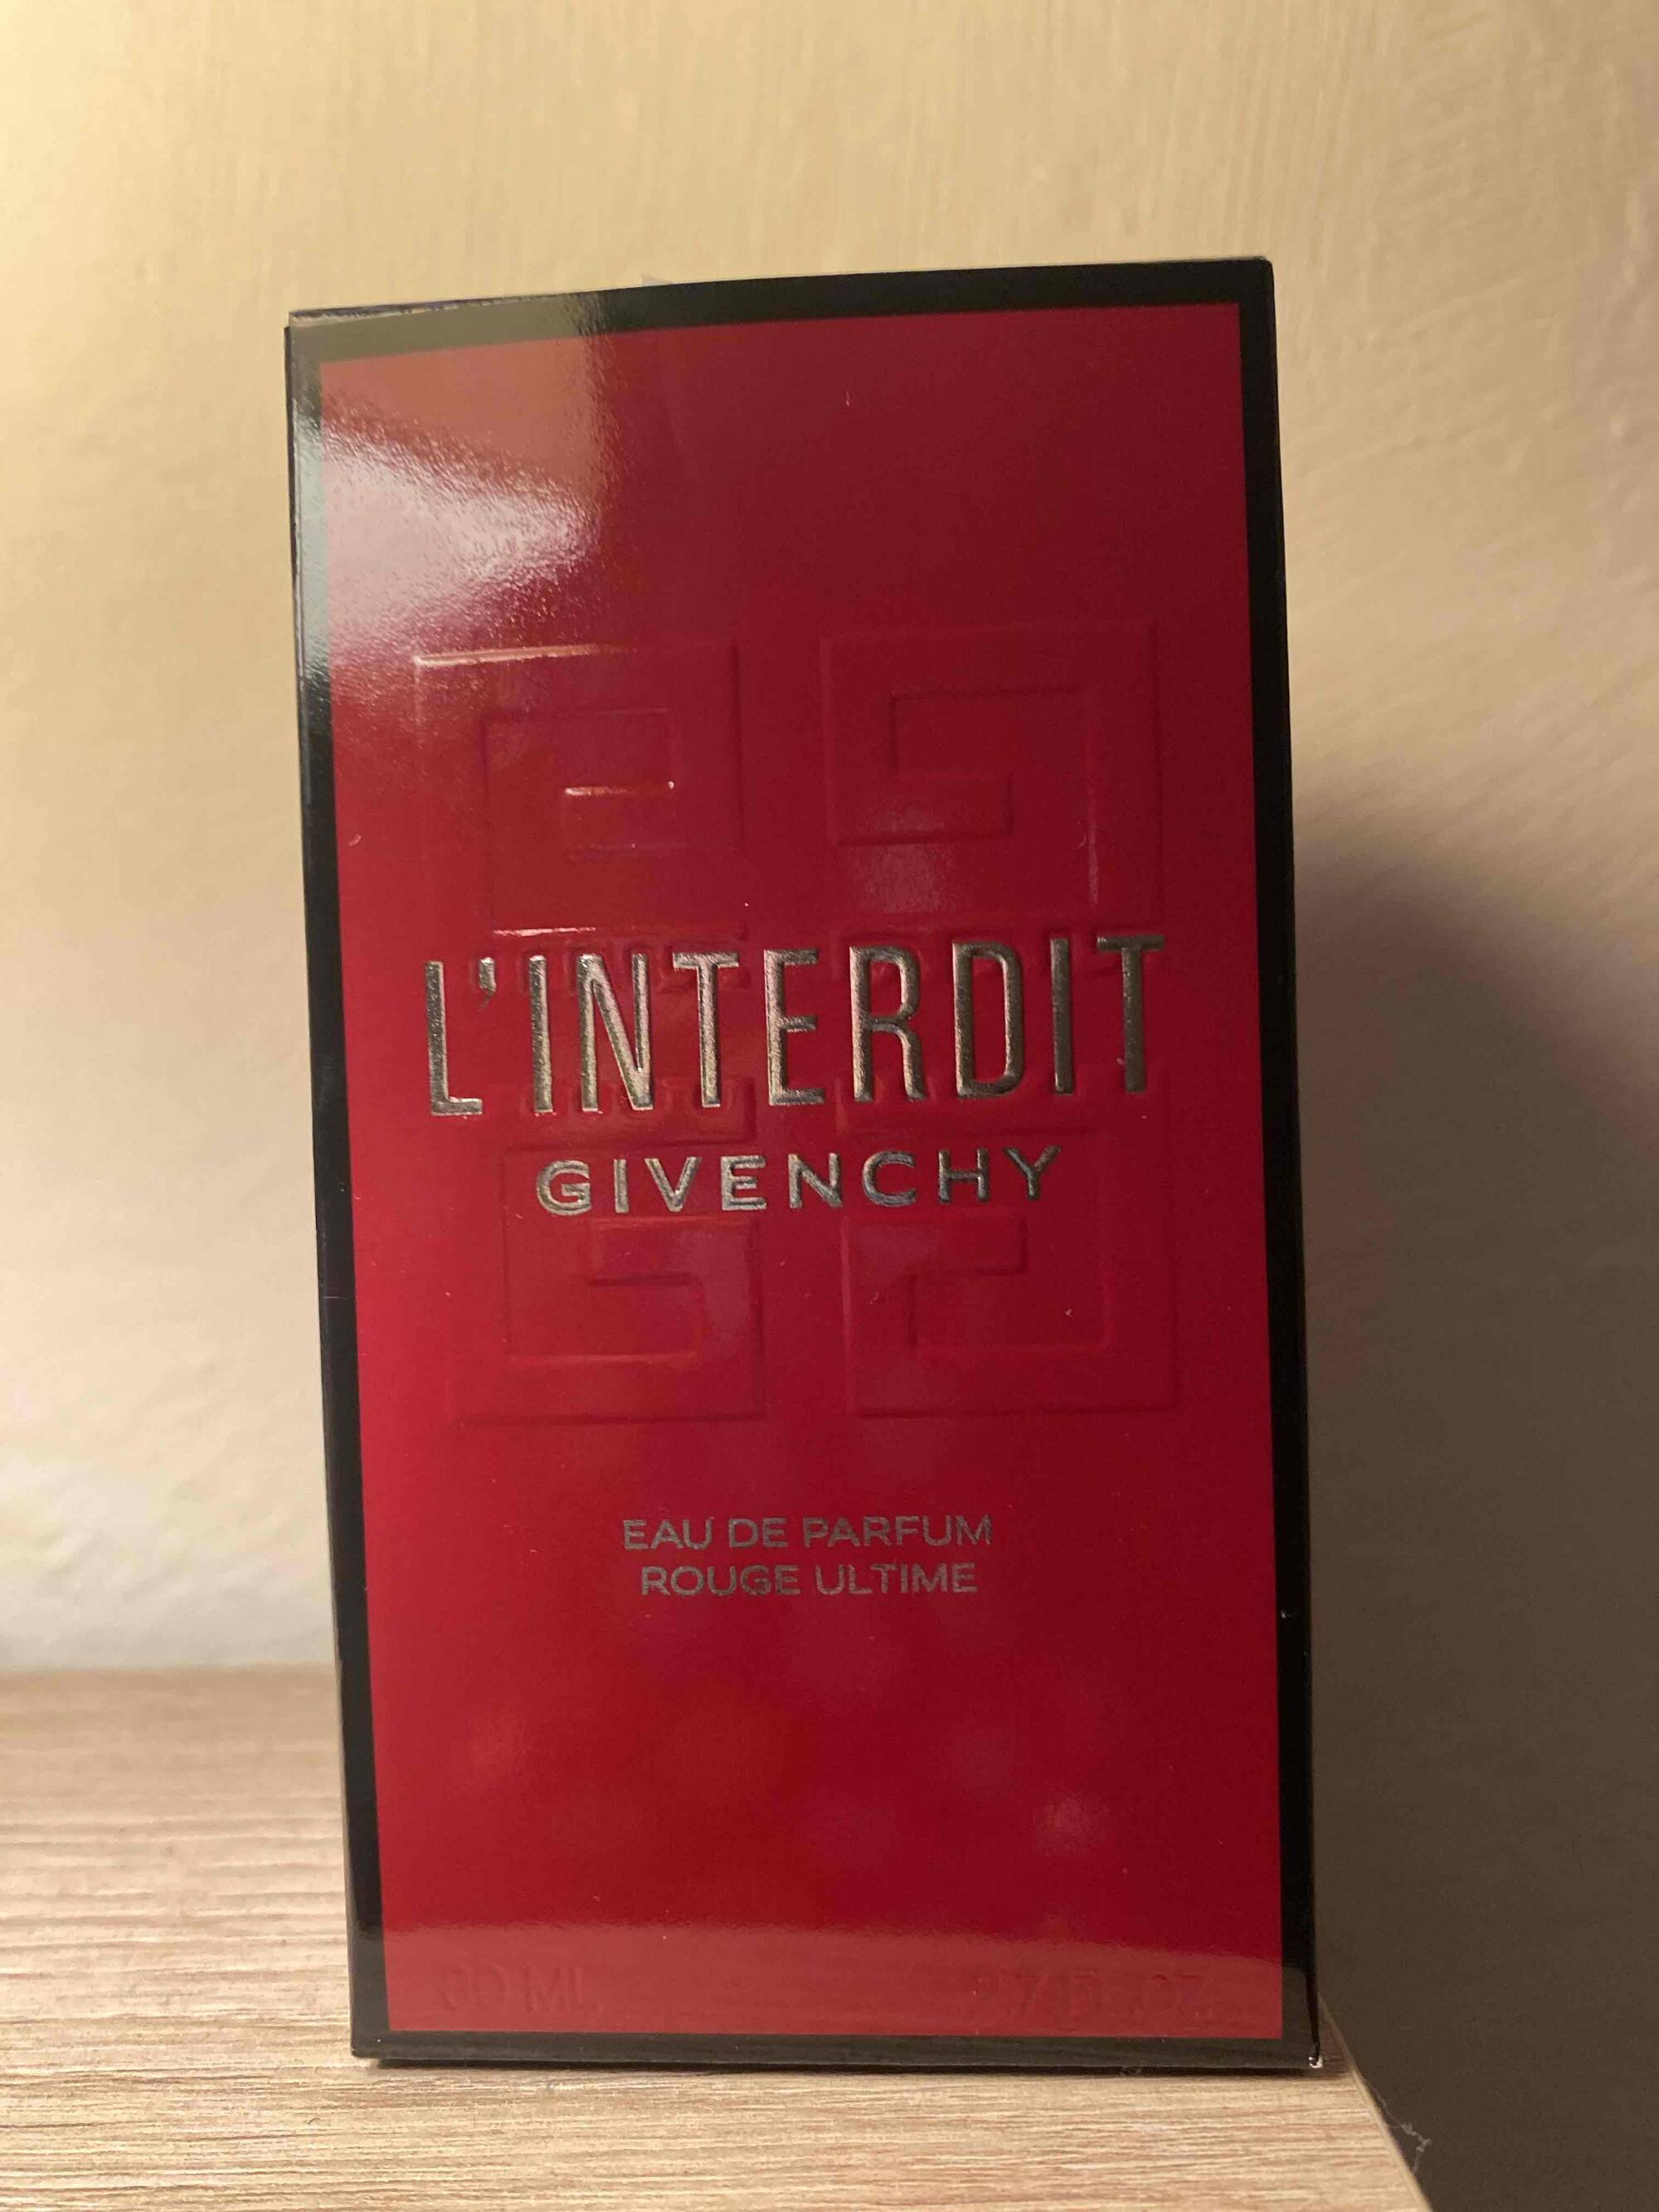 GIVENCHY - L'Interdit - Eau de parfum rouge ultime